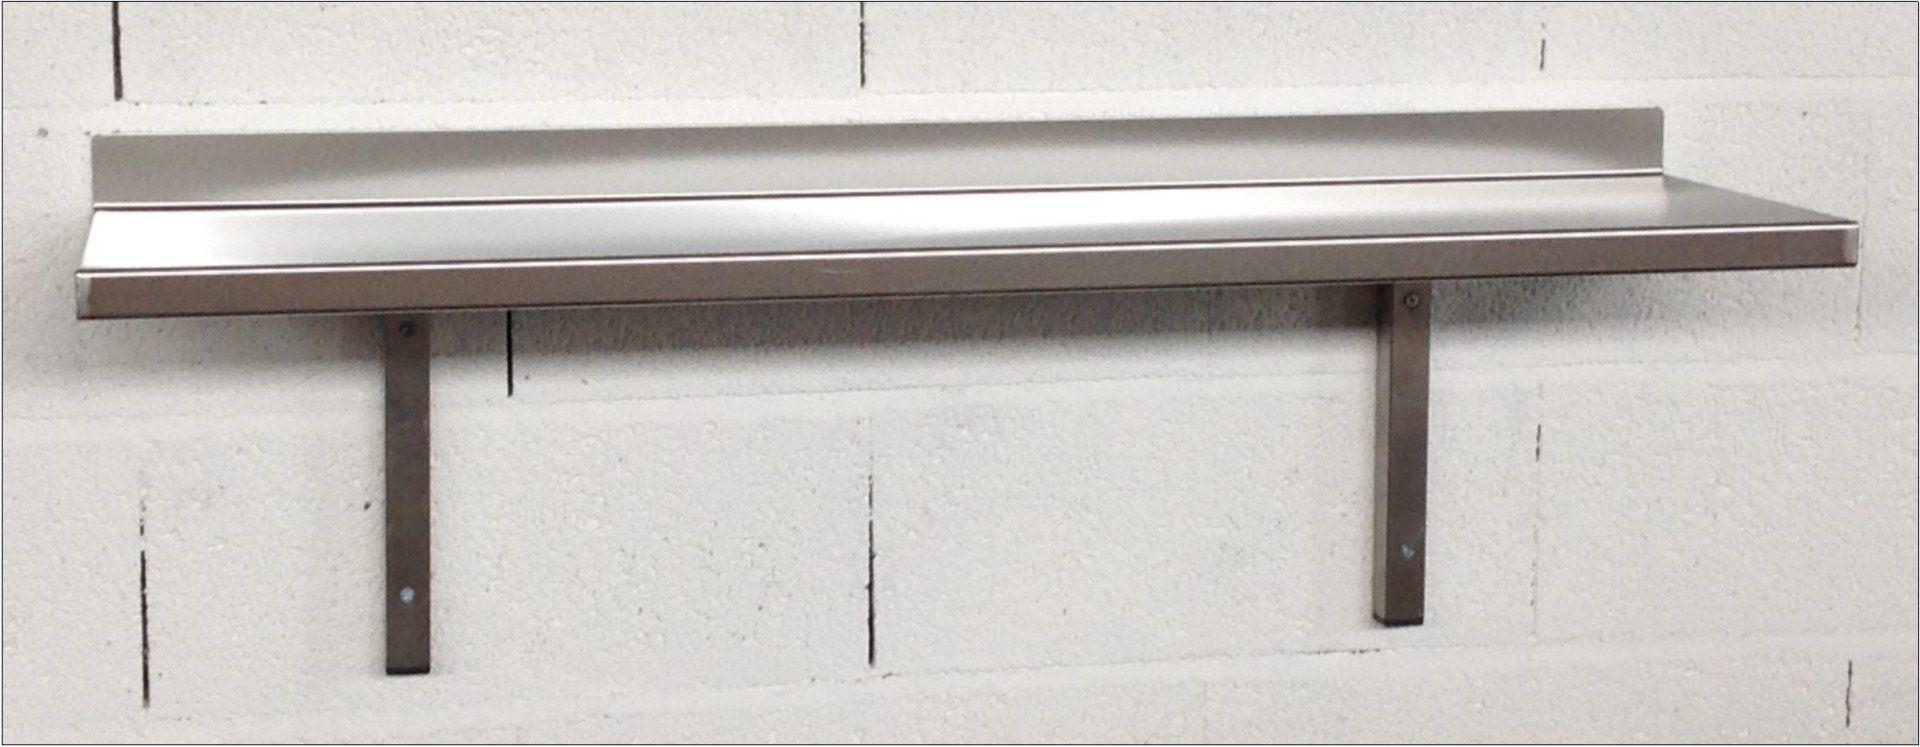 Bespoke stainless steel wall shelves, bespoke stainless steel wall shelving